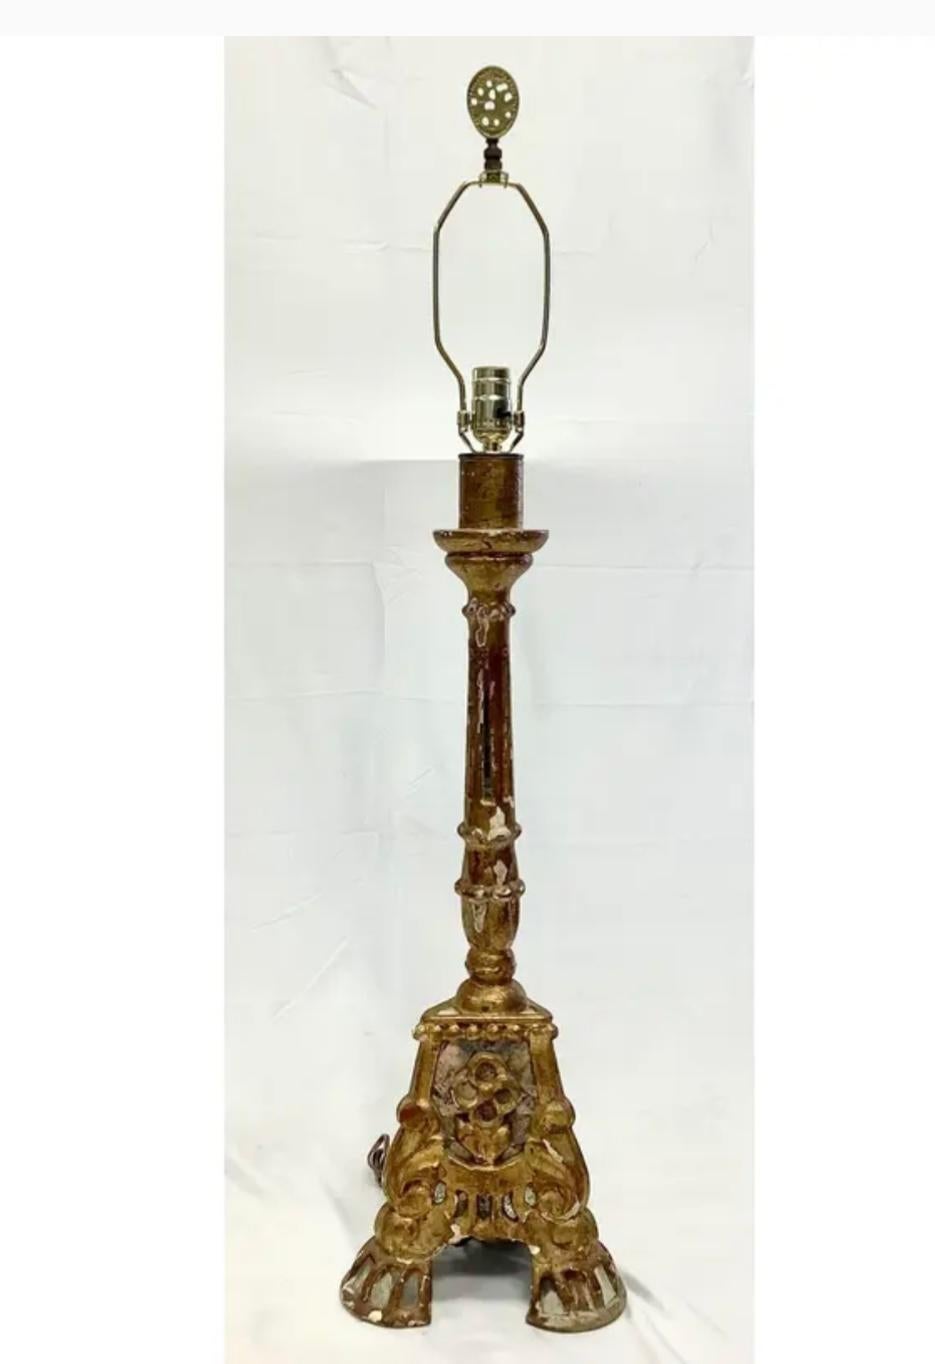 Lampe chandelier italienne du 19ème siècle en bois doré. De magnifiques détails décoratifs sur chaque surface. La lampe repose sur trois pieds à volutes. La harpe est couronnée d'un charmant fleuron en laiton. La base comporte des pièces de mosaïque